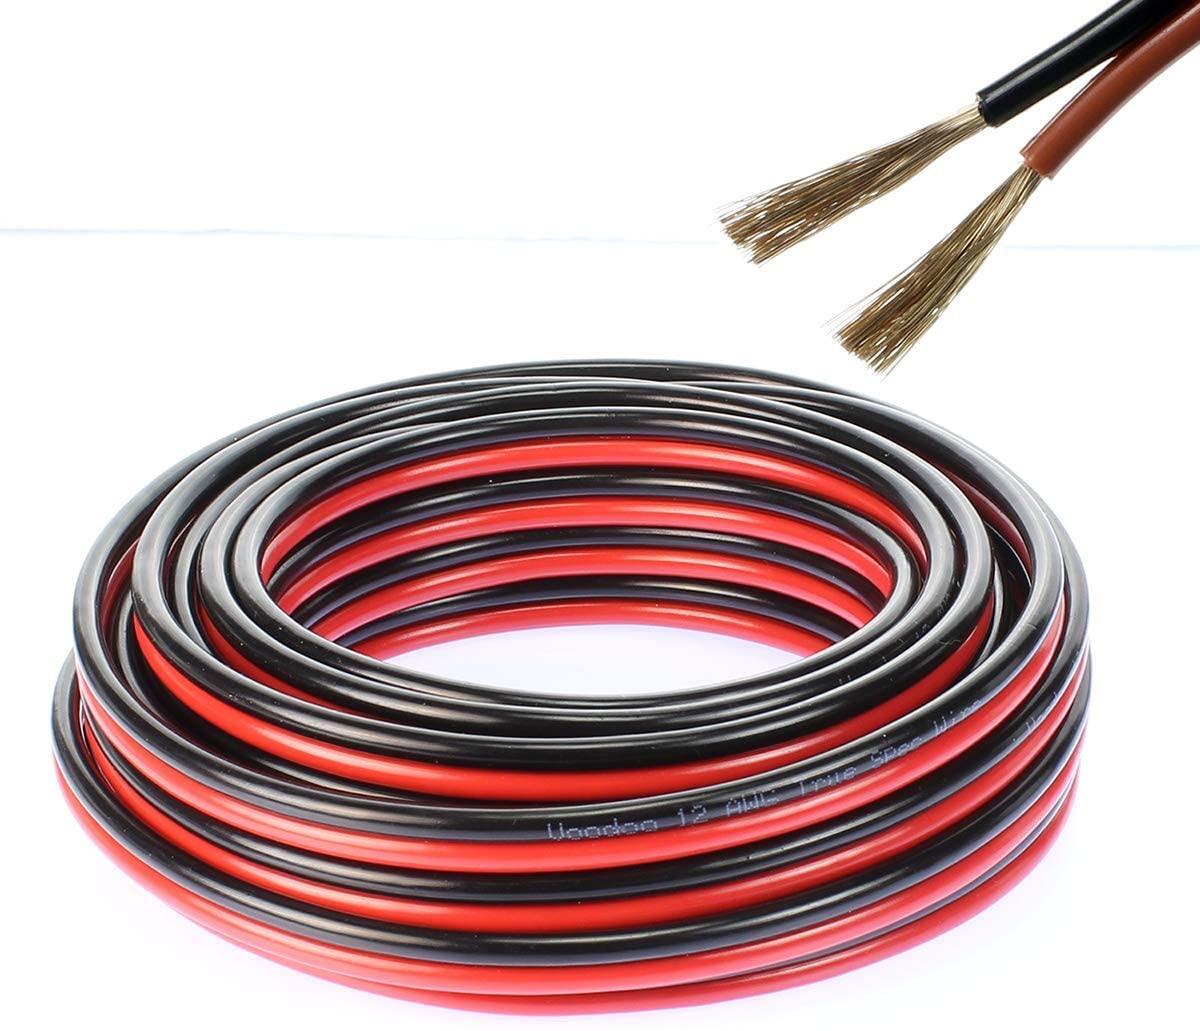 สายไฟ แดงดำ 17awg (1 mm²) สายลำโพง สายไฟคู่ สายคู่ electrical wire cable เครื่องเสียง รถยนต์ car aud สี ชุด 20 เมตร สี ชุด 20 เมตร